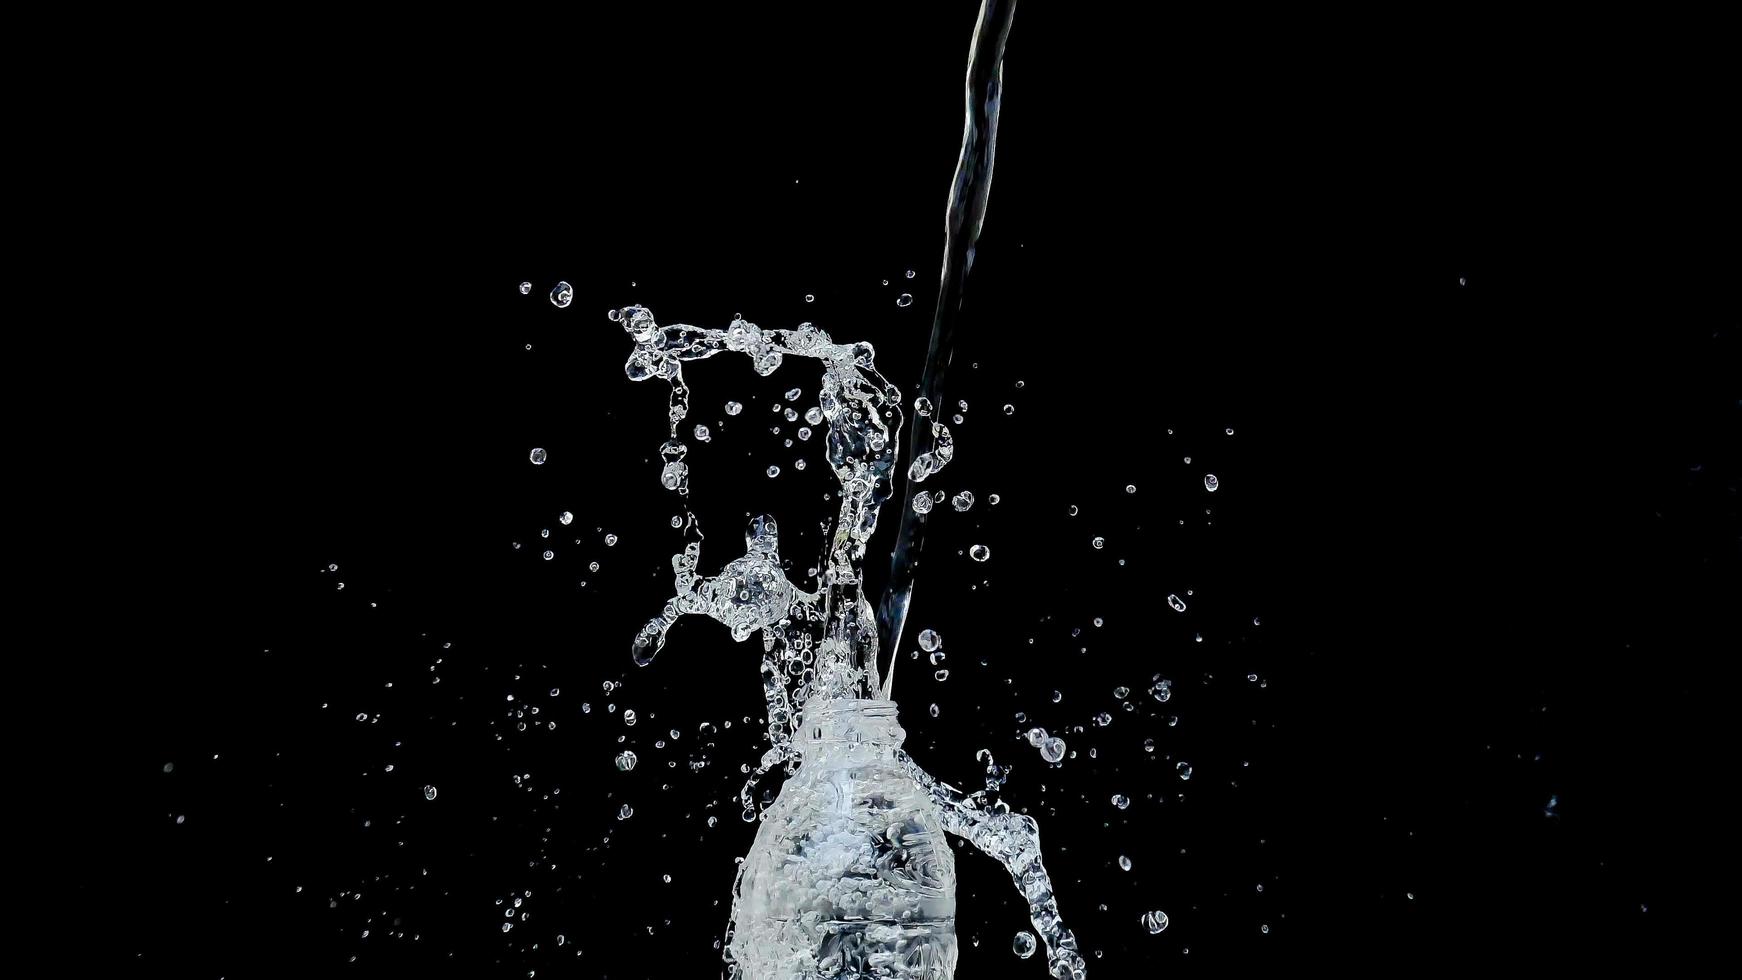 abstrakt vattenjet kraschar på en svart bakgrund foto